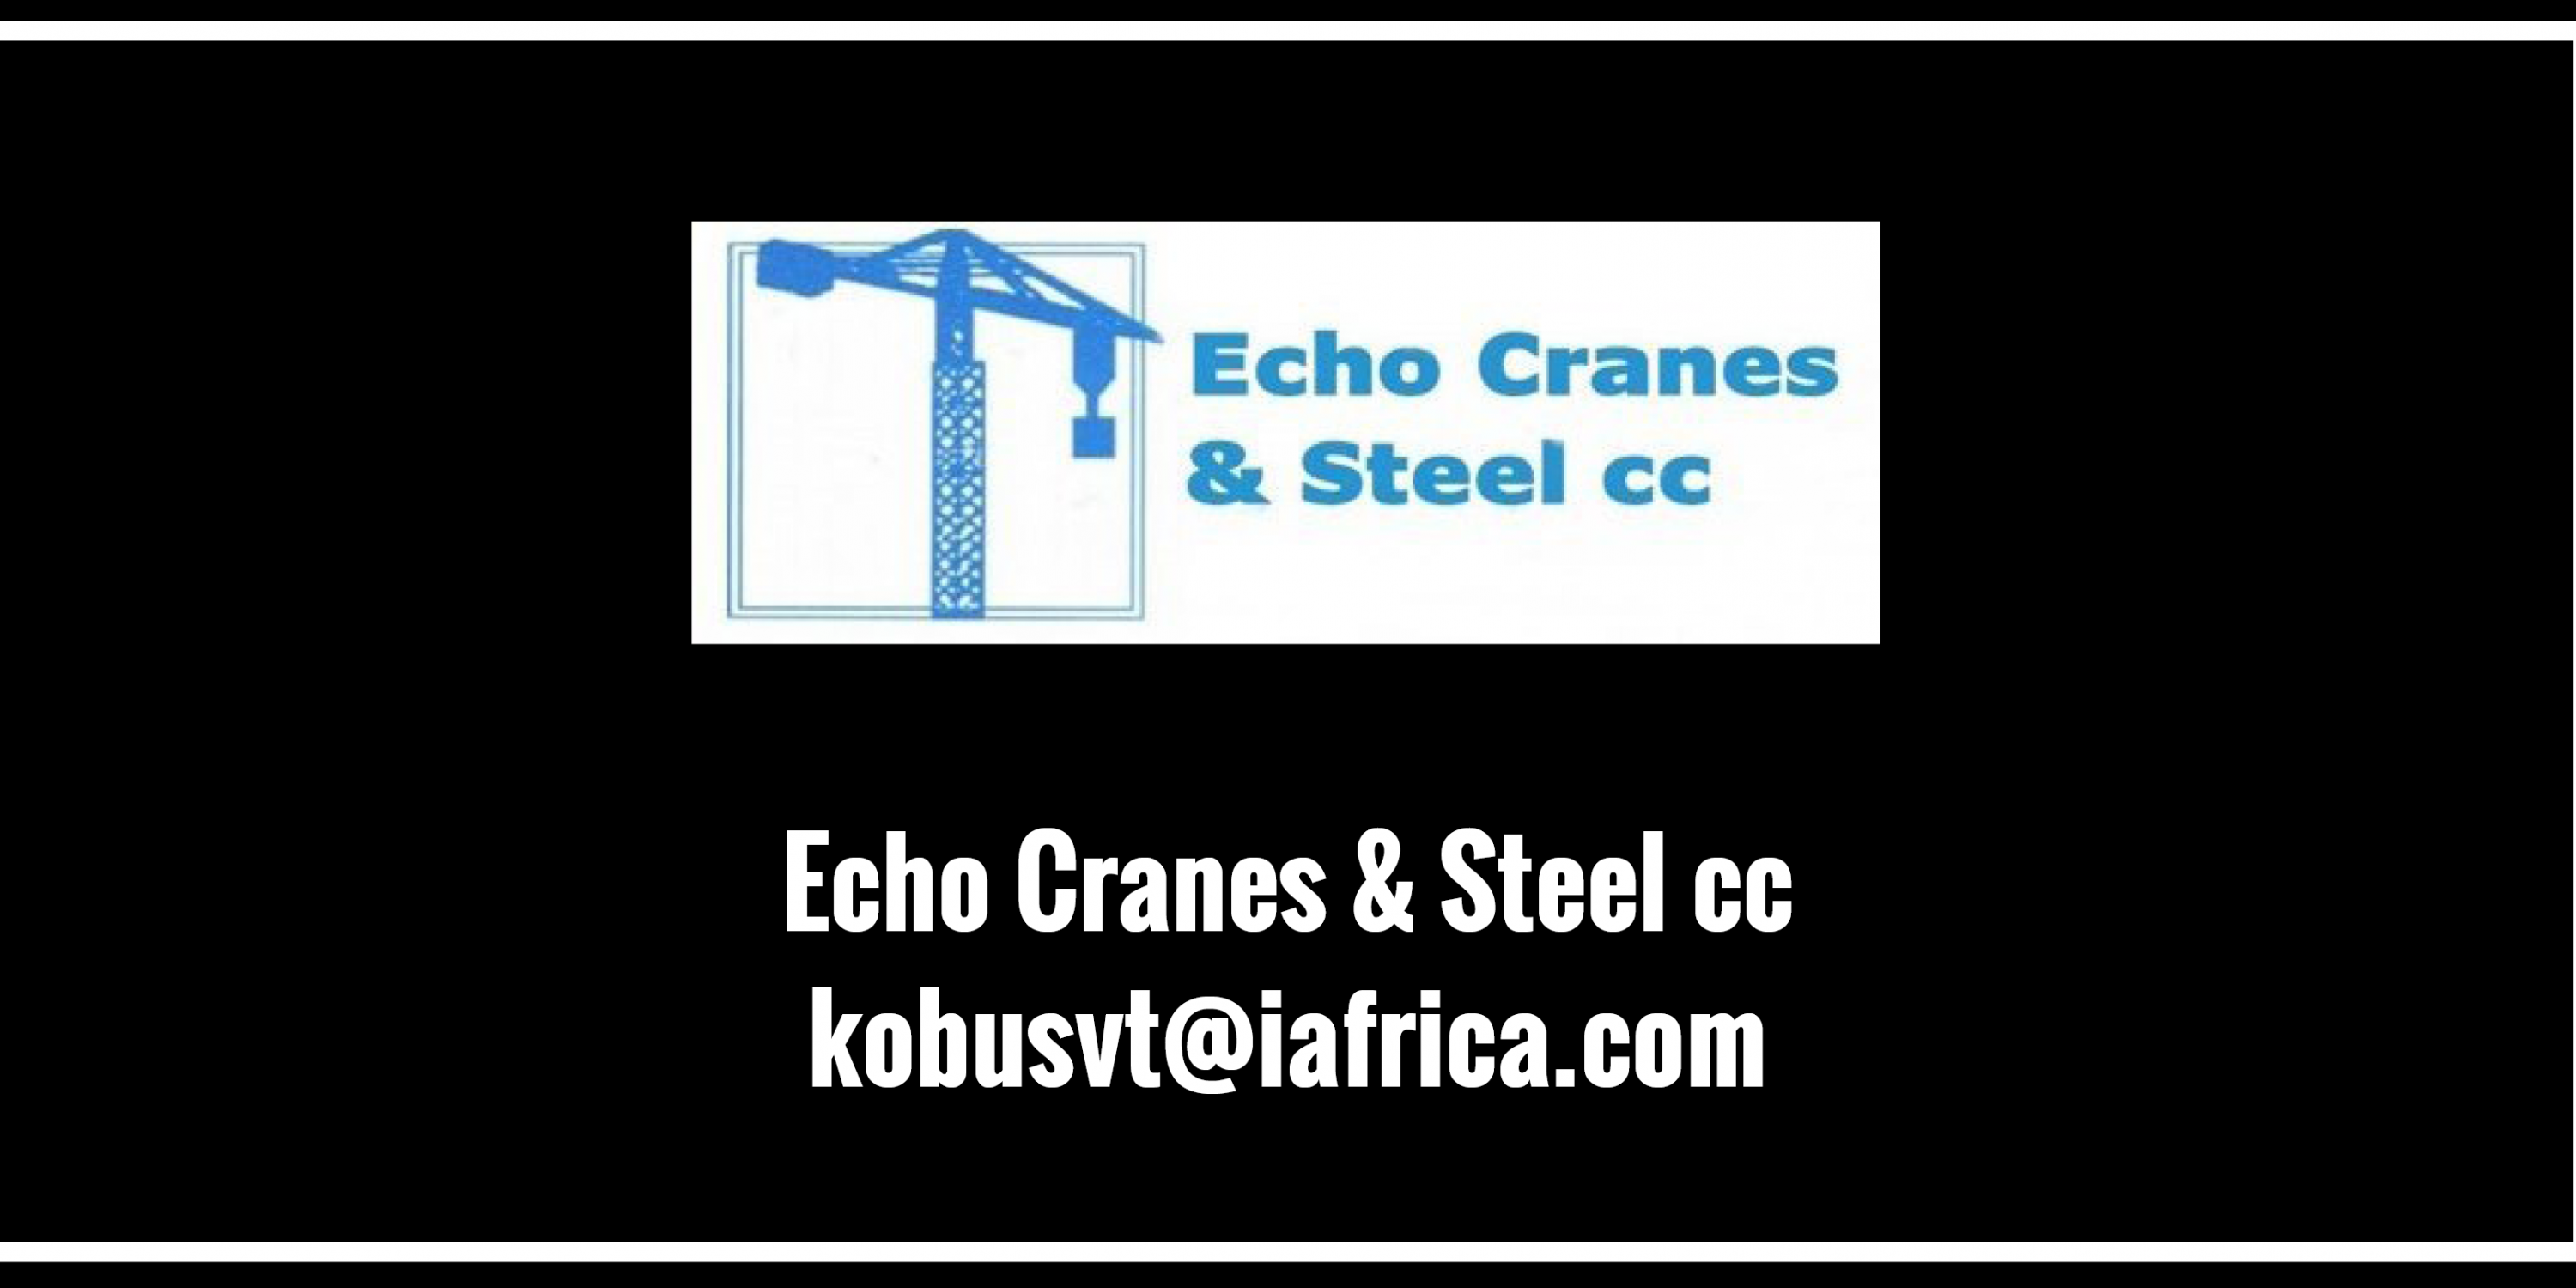 Echo Cranes & Steel cc